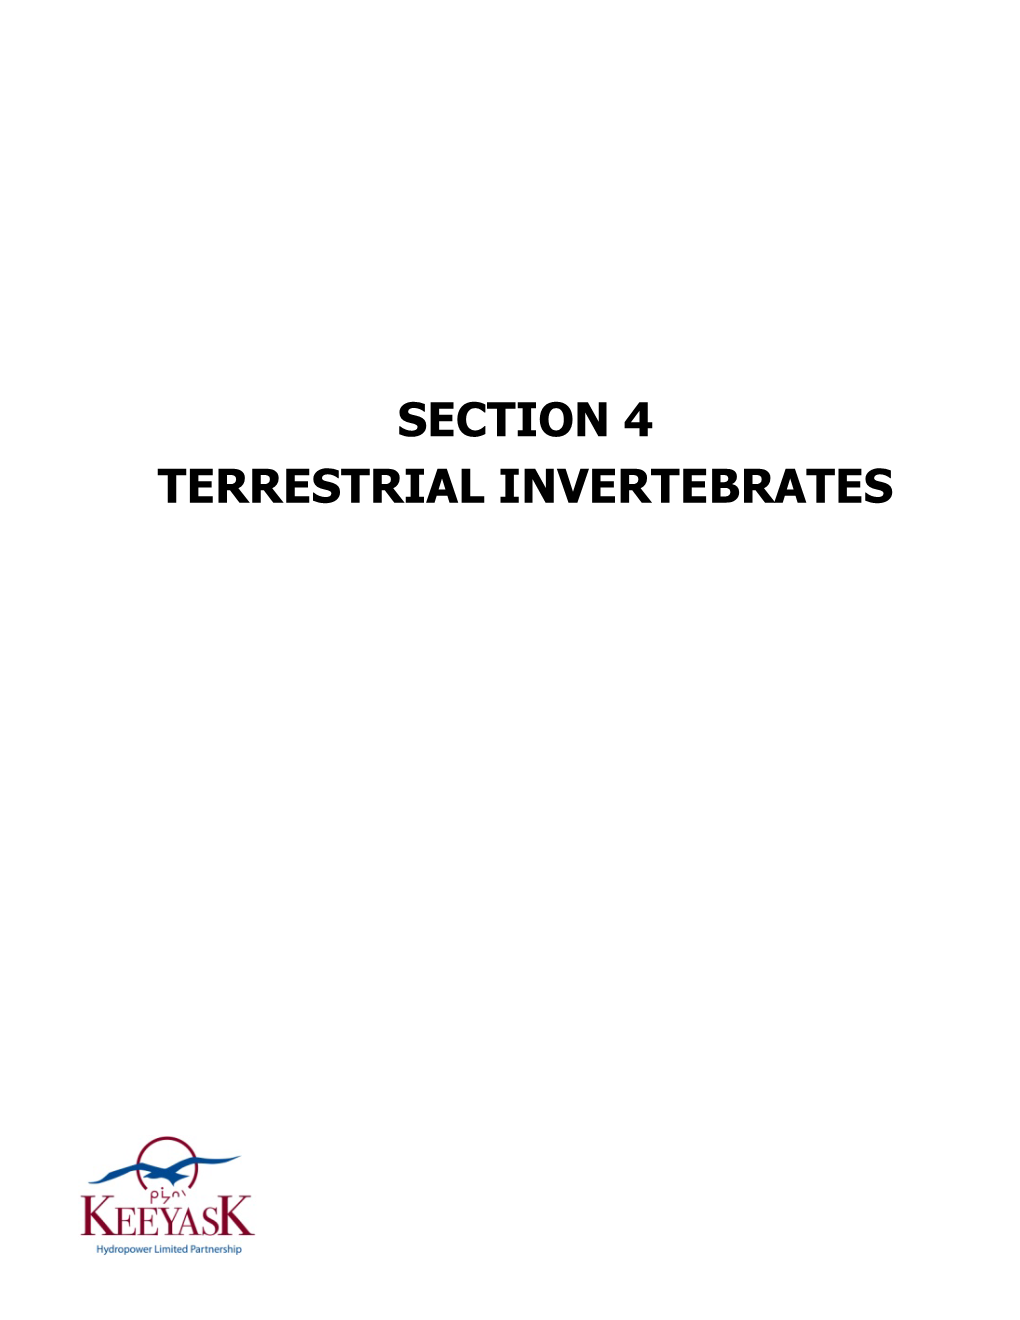 Terrestrial Invertebrates